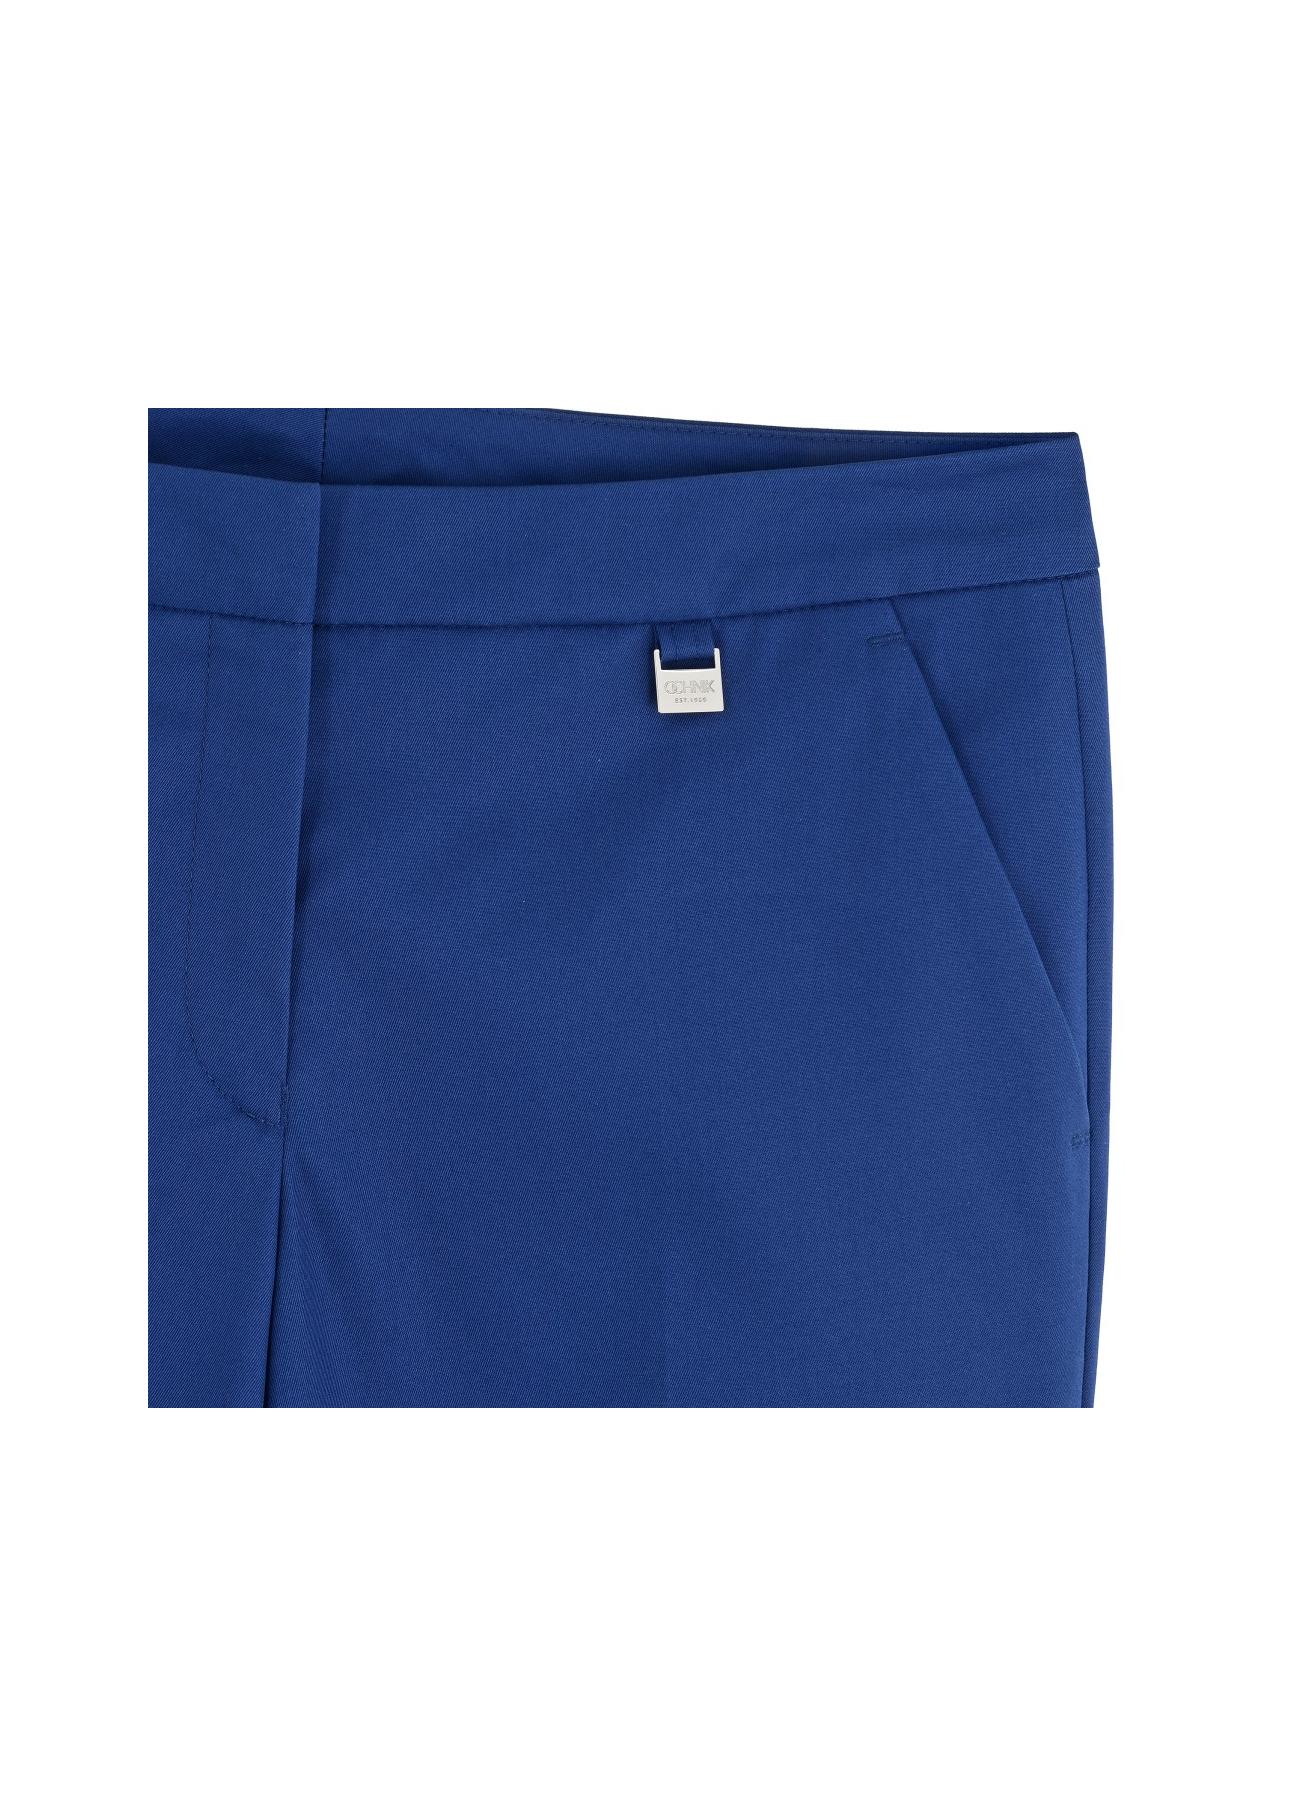 Spodnie damskie SPODT-0013-61(W17)